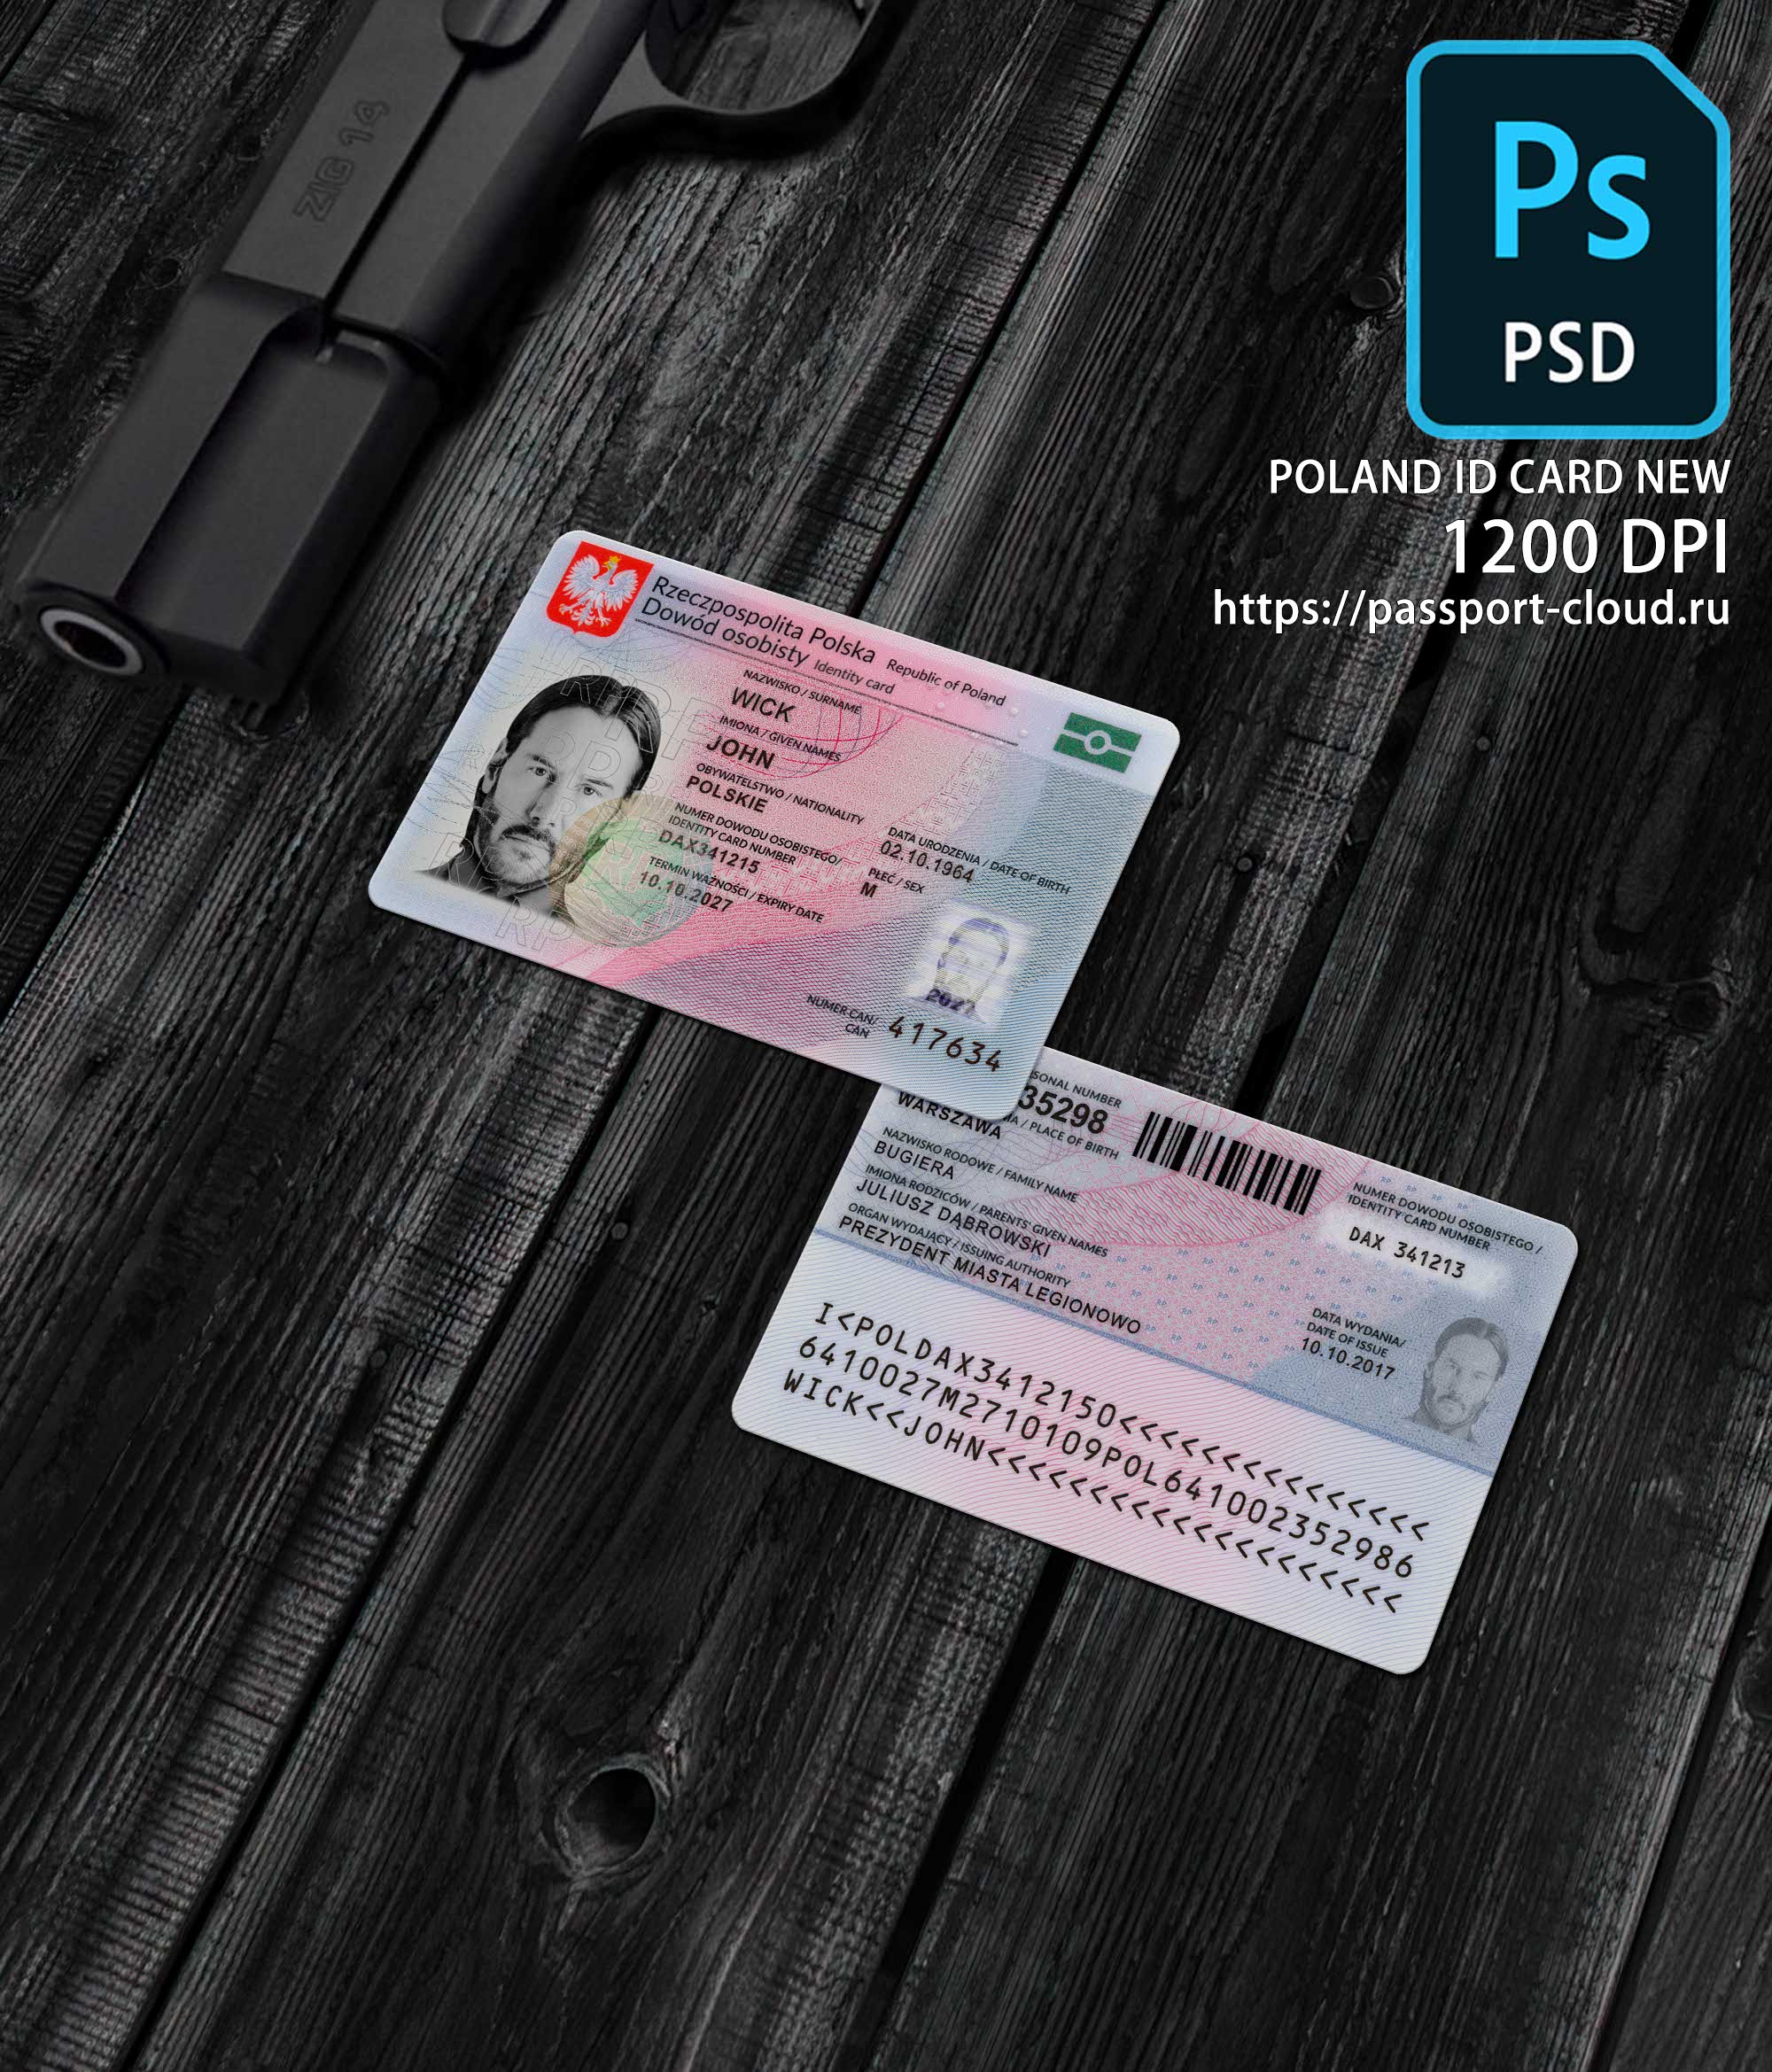 Poland ID Card 2019+1